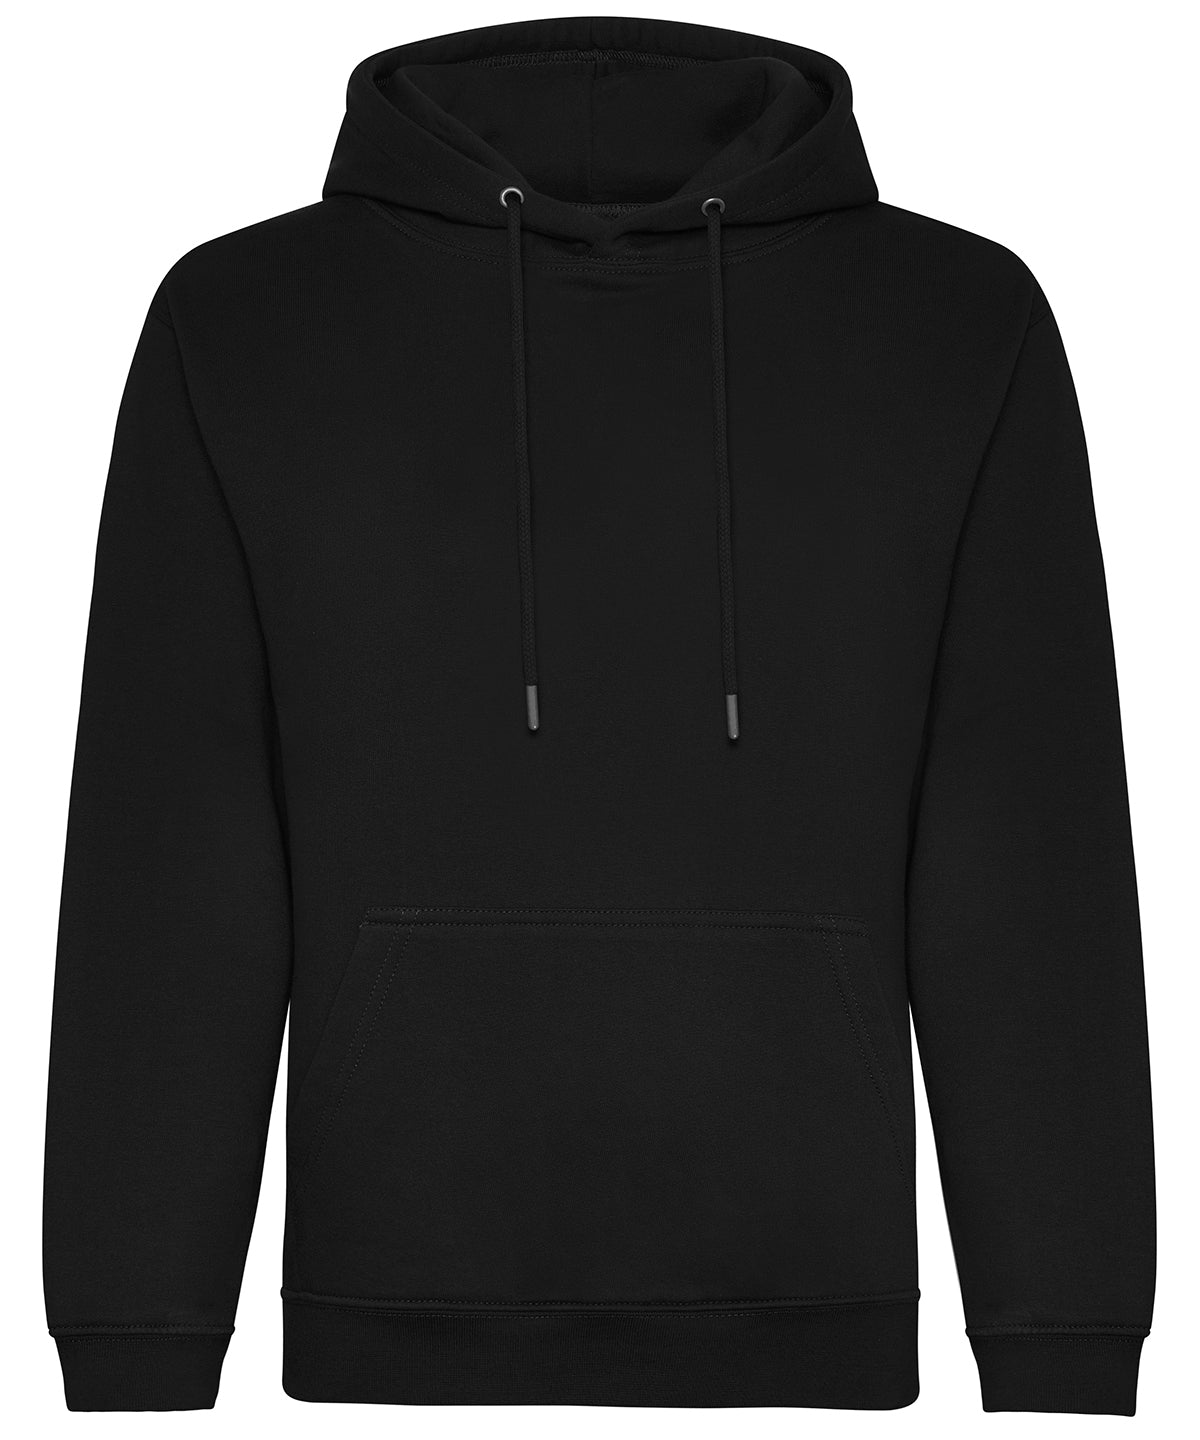 Personalised Hoodies - White AWDis Just Hoods Organic hoodie